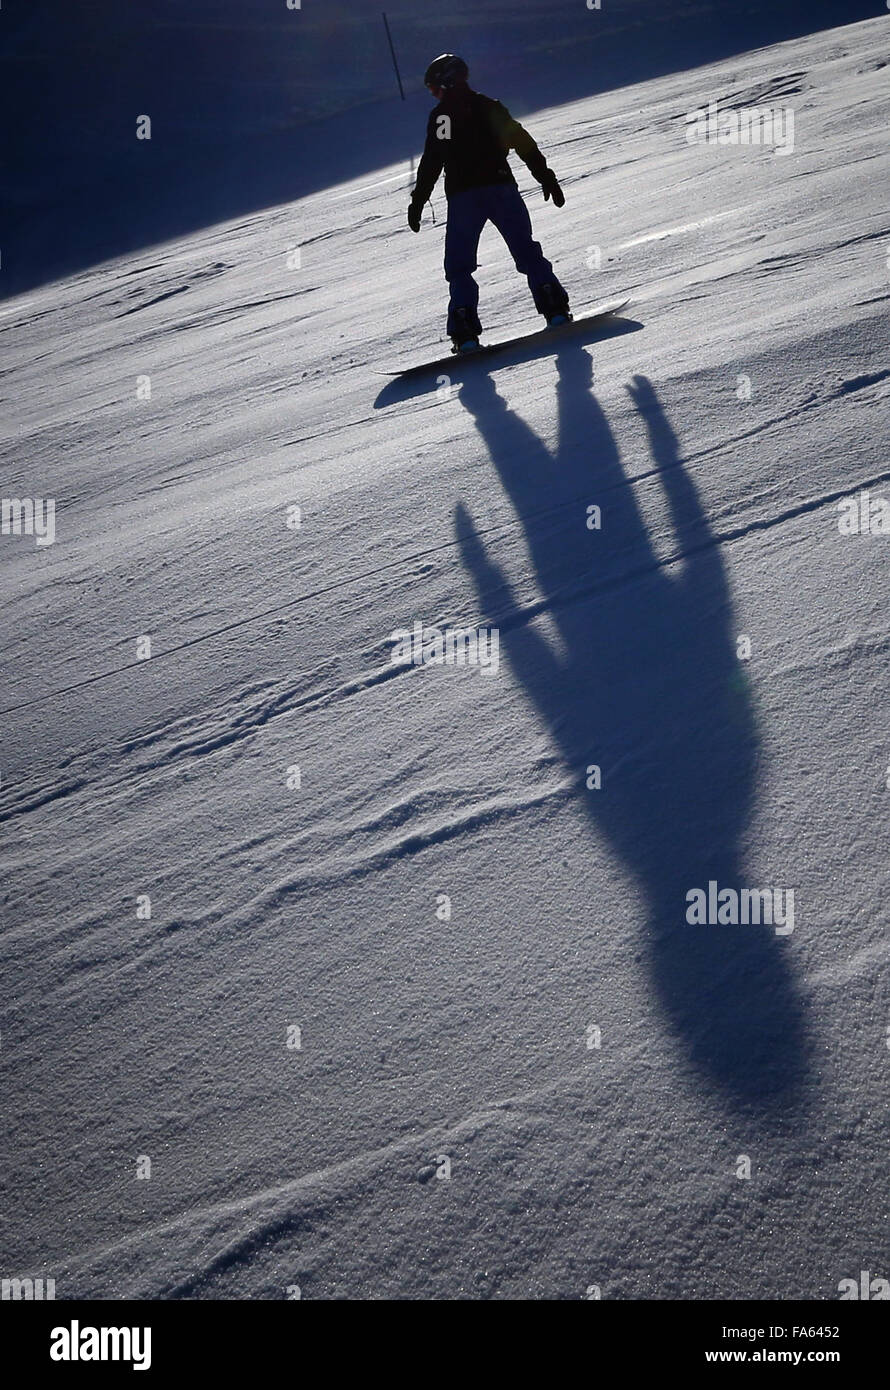 Oberstdorf, Germania. 22 Dic, 2015. Uno snowboarder in azione al di sotto della stazione a metà strada si trova ad una altitudine di 1780 metri sul Fellhorn montagna vicino a Oberstdorf, Germania, 22 dicembre 2015. Anche se non vi è attualmente alcun neve per essere trovato in basso a zone pianeggianti dello stato tedesco della Baviera, lo sci e lo snowboard sono ancora possibili su un numero limitato di piste ad altitudini più alte delle Alpi Bavaresi. Foto: KARL-JOSEF HILDENBRAND/dpa/Alamy Live News Foto Stock